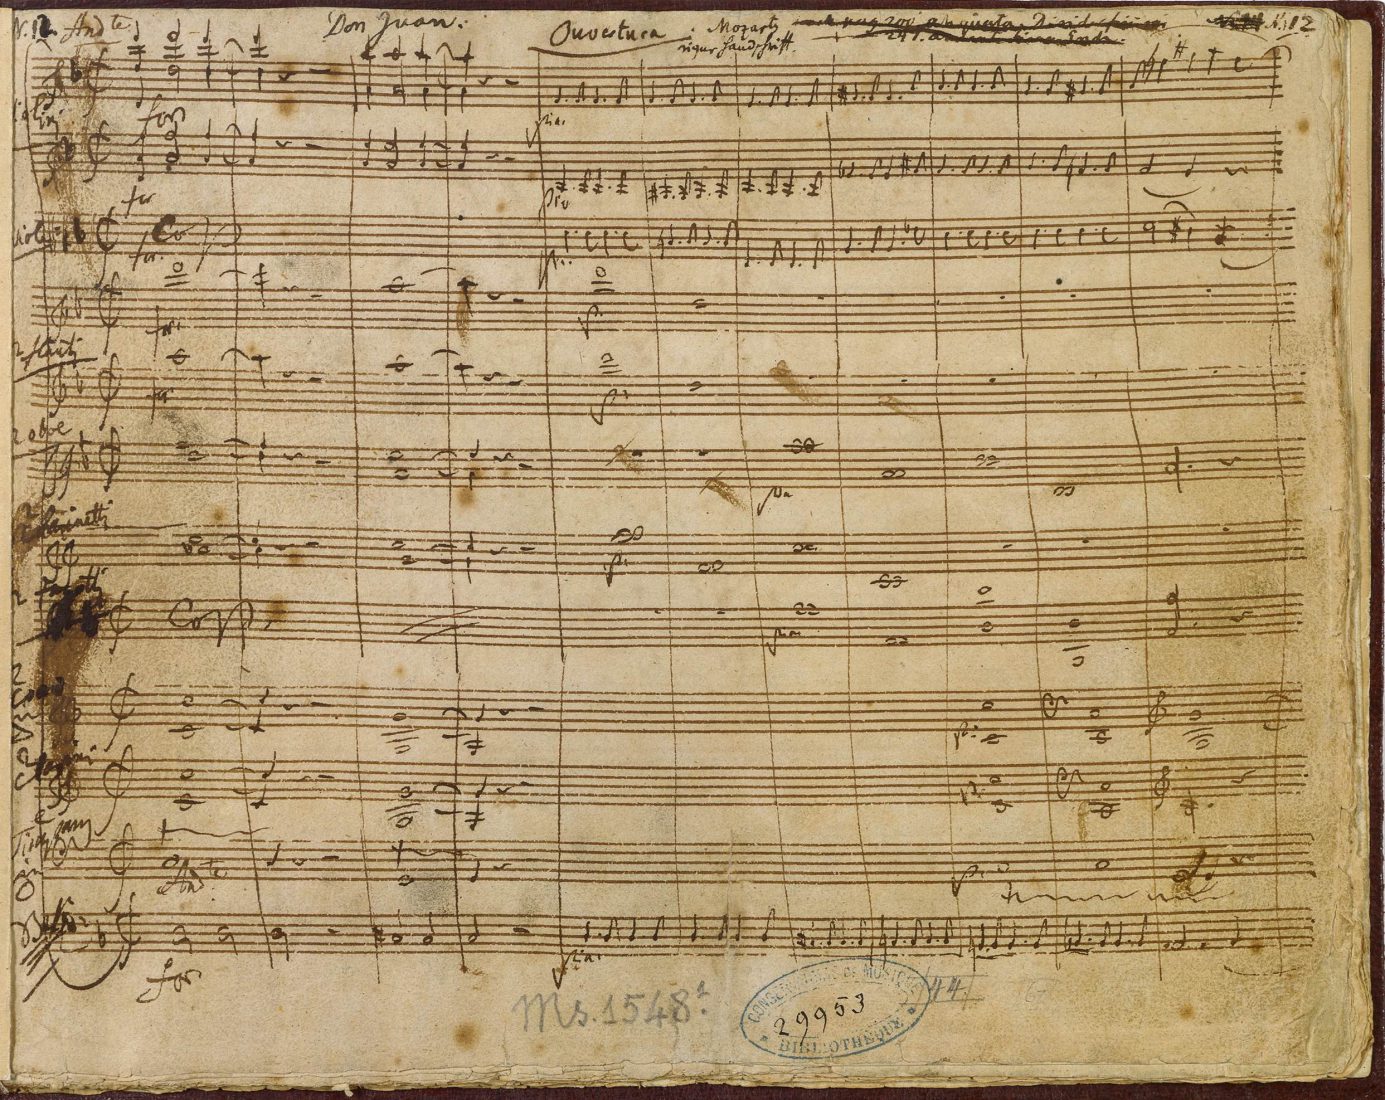 Il dissoluto punito ossia il Don Giovanni. Partition manuscrite autographe de Mozart, 1787.